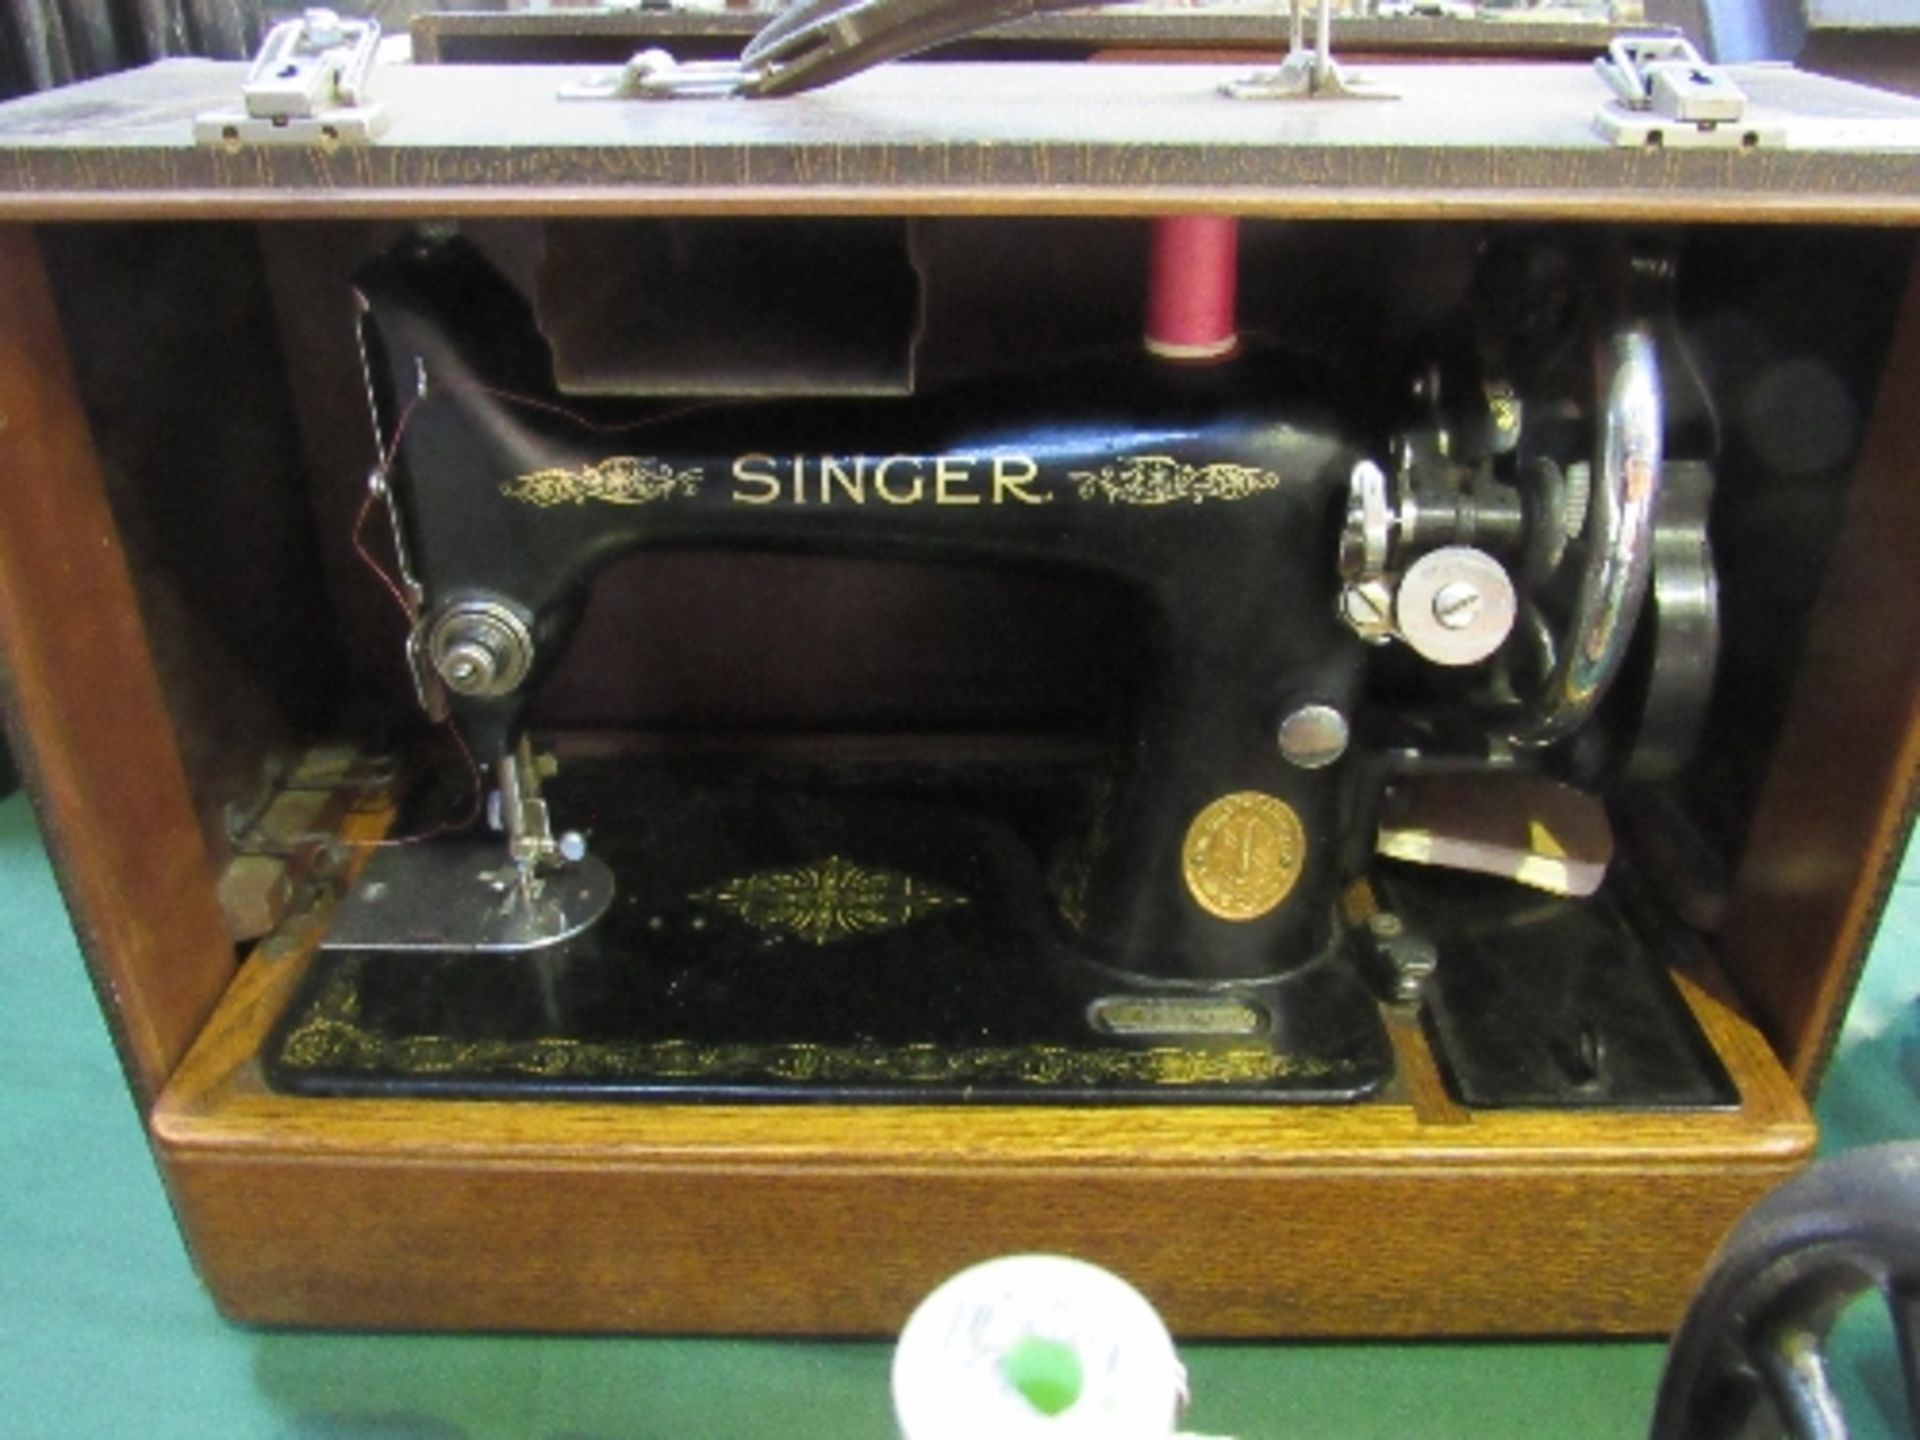 Singer EB654762 manual sewing machine c/w case